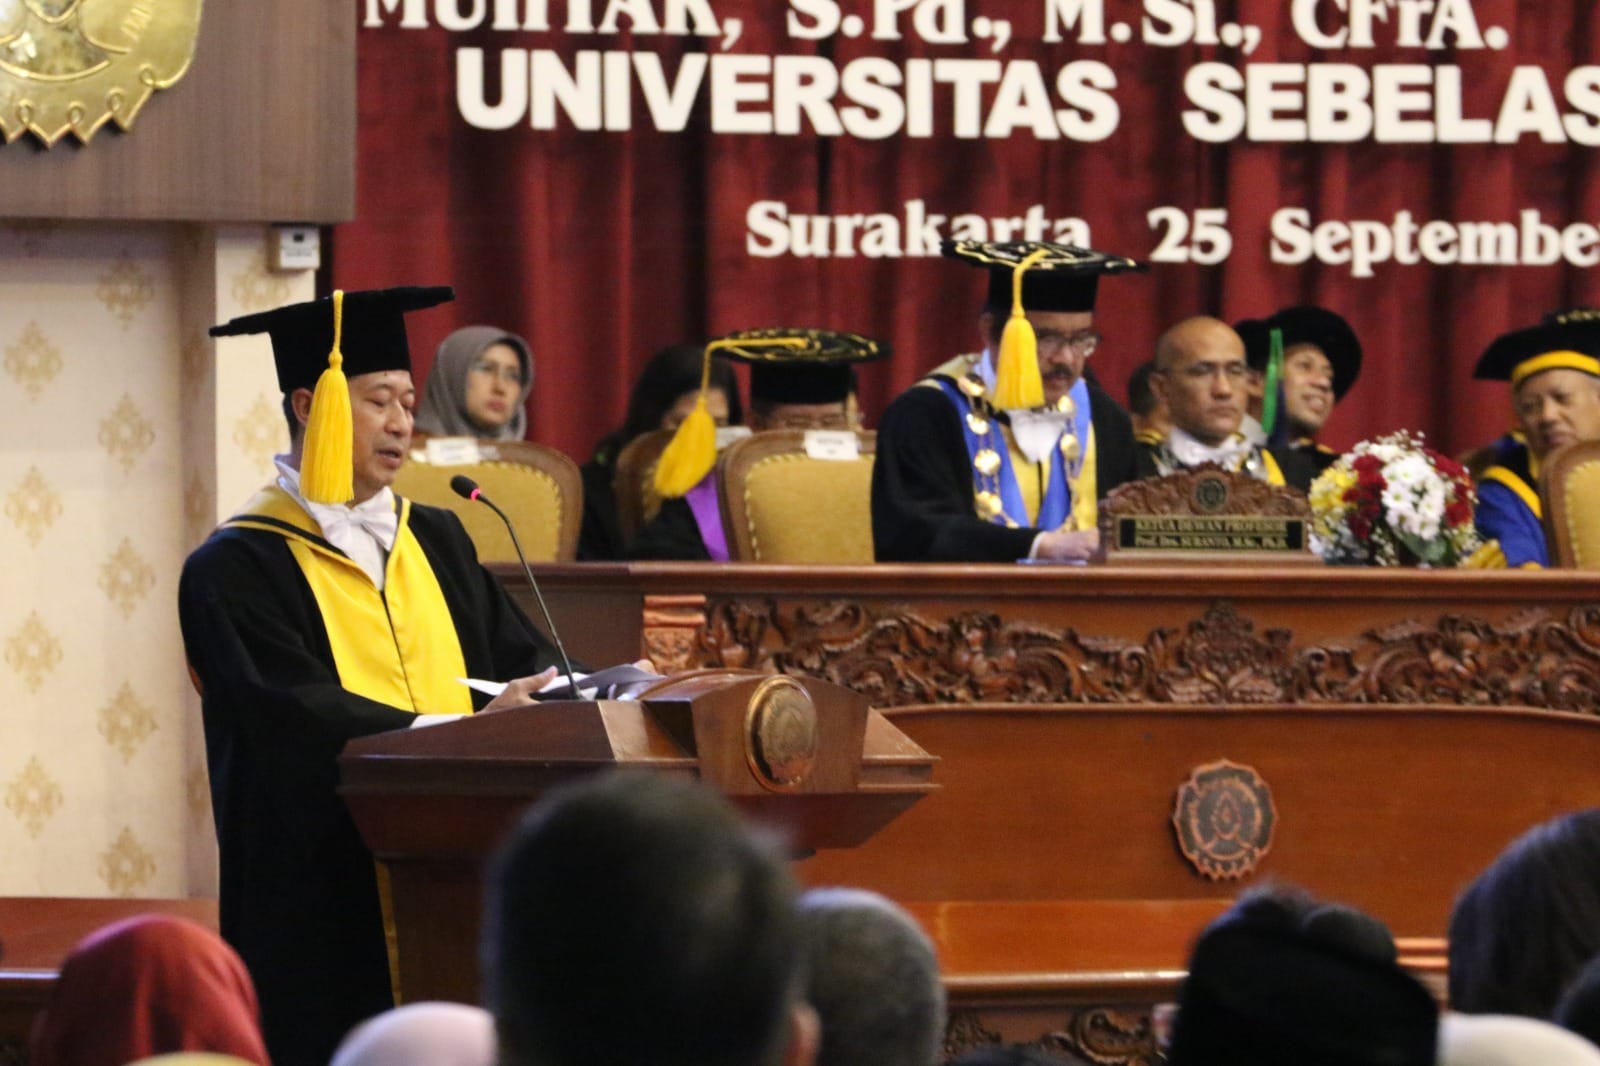 Pakar Hukum Fakultas Hukum Universitas Sebelas Maret (FH UNS) Surakarta, Prof. DR Yudho Taruno Muryanto SH. MHum hari ini dikukuhkan sebagai Guru Besar Bidang Ilmu Hukum Korporasi dan Investasi